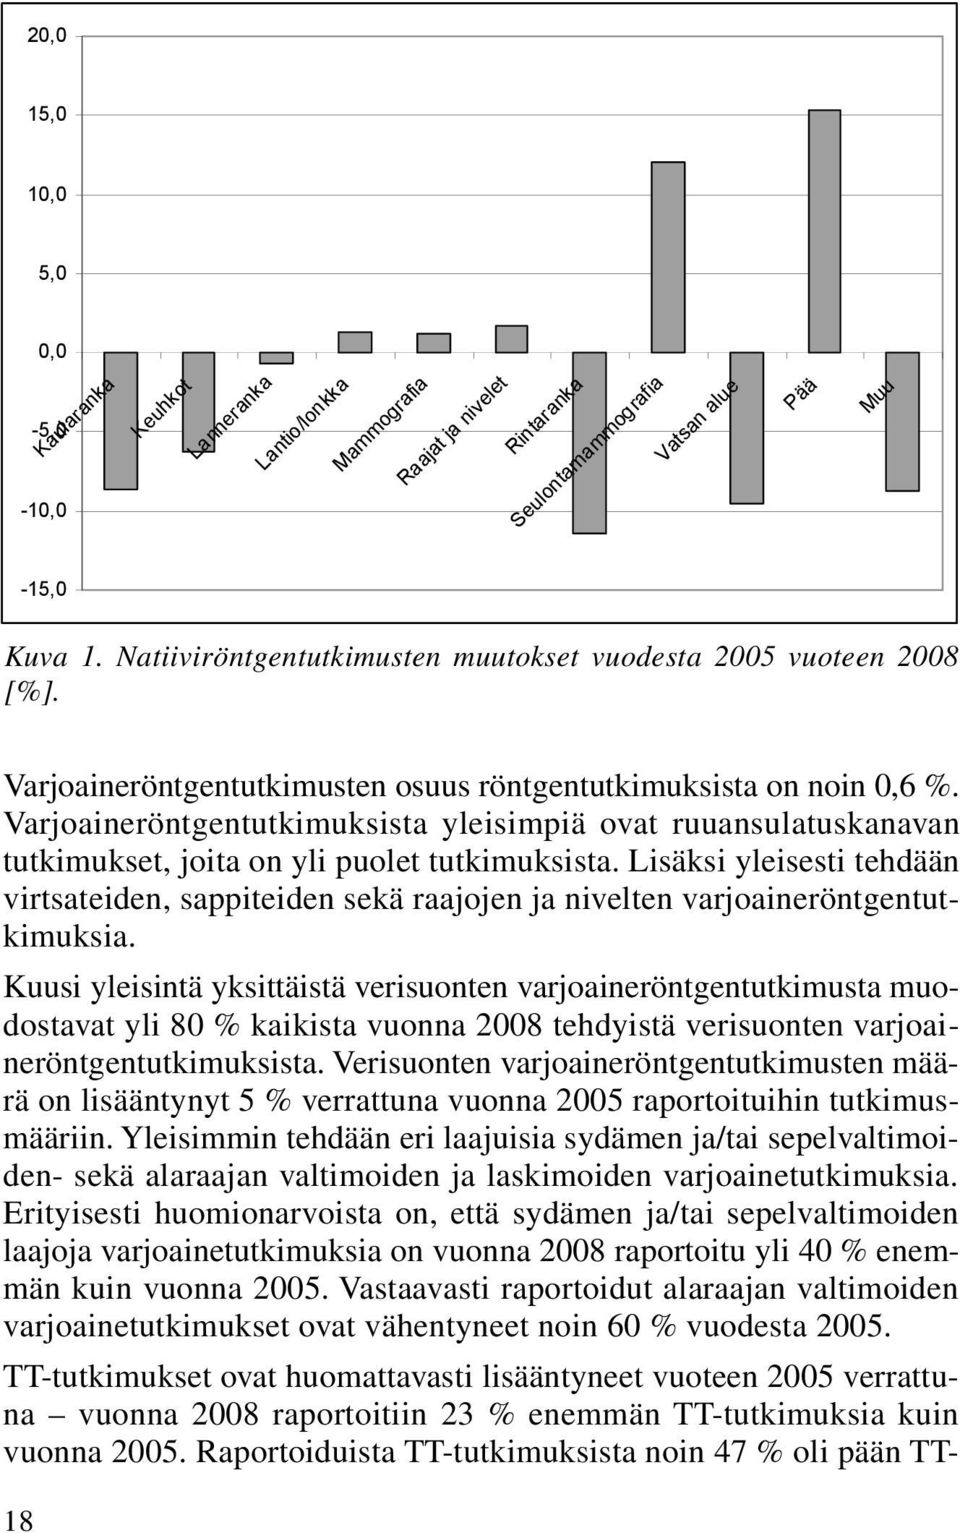 Lantio/lonkka Mammografia Raajat ja nivelet Rintaranka Seulontamammografia Vatsan alue Pää Muu -15,0 Kuva 1. Natiiviröntgentutkimusten muutokset vuodesta 2005 vuoteen 2008 [%].